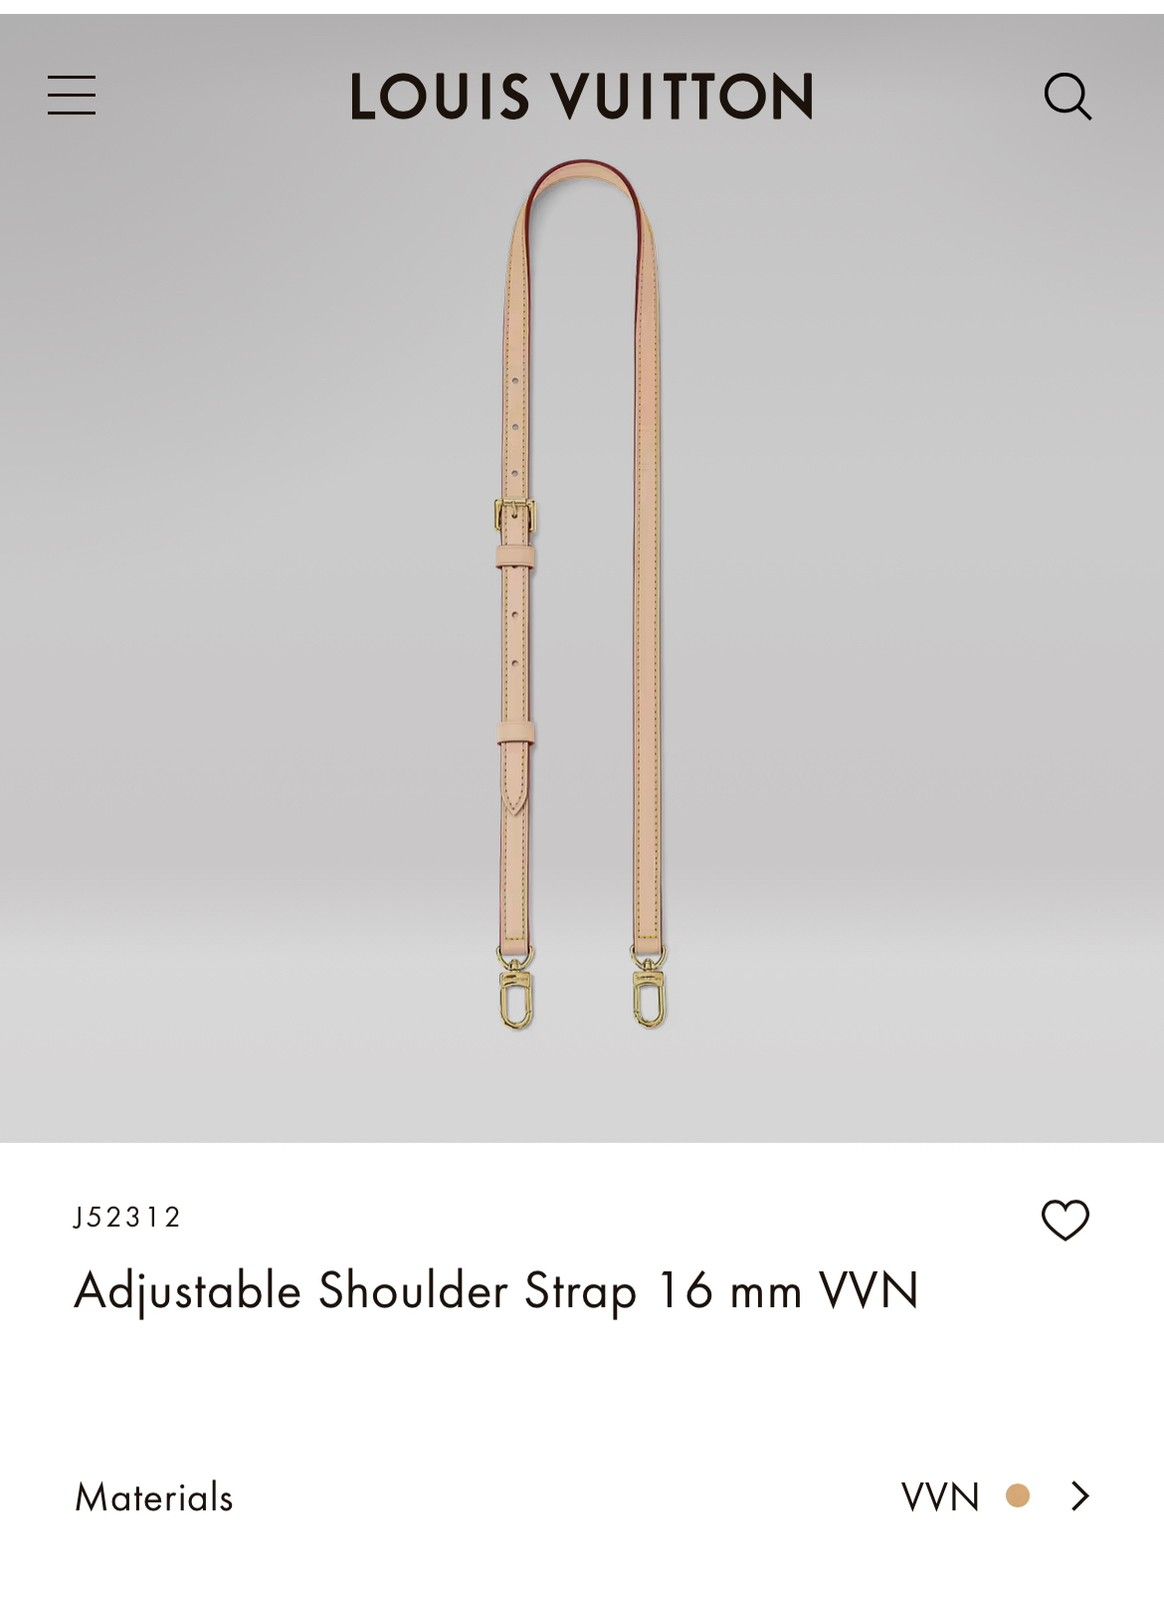 Louis Vuitton Adjustable Shoulder Strap 16 mm VVN - J52312